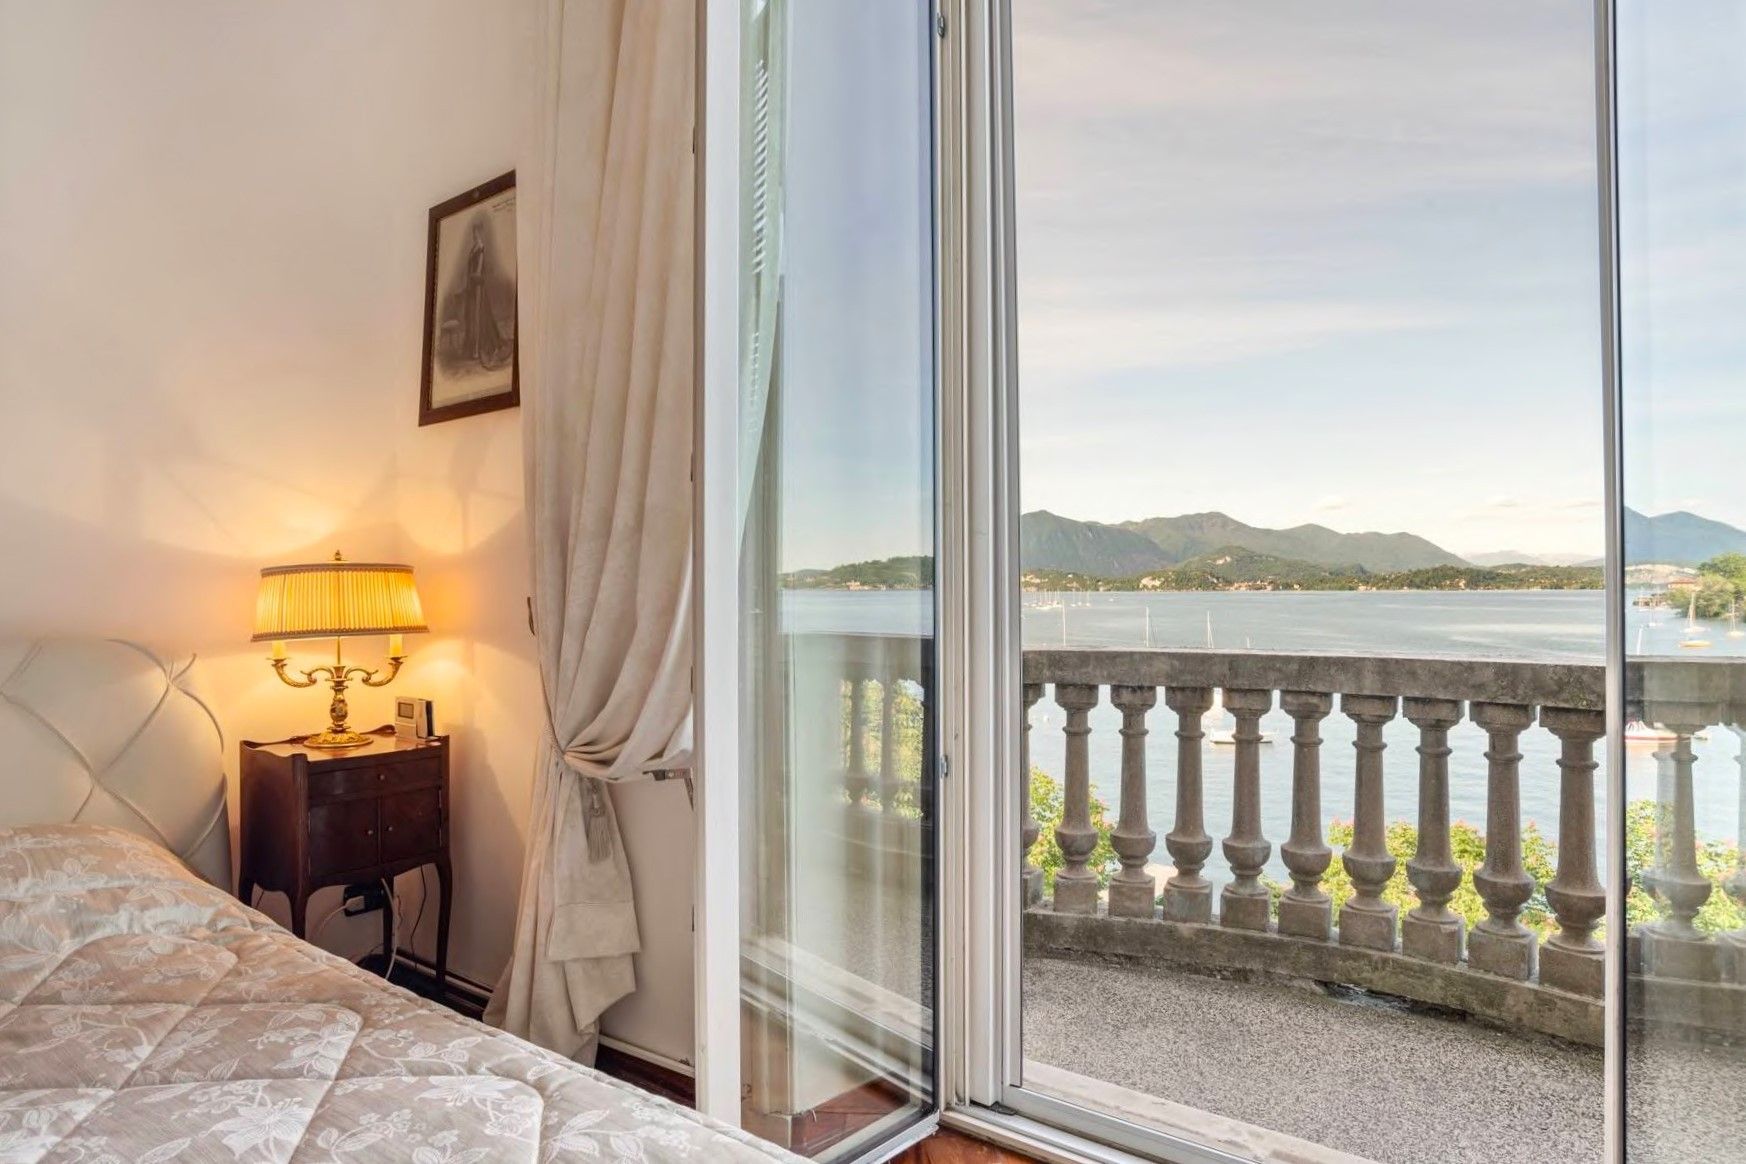 Fotos Prestigeträchtiges Apartment mit atemberaubender Aussicht auf den Lago Maggiore in historischem Palazzo am Seeufer